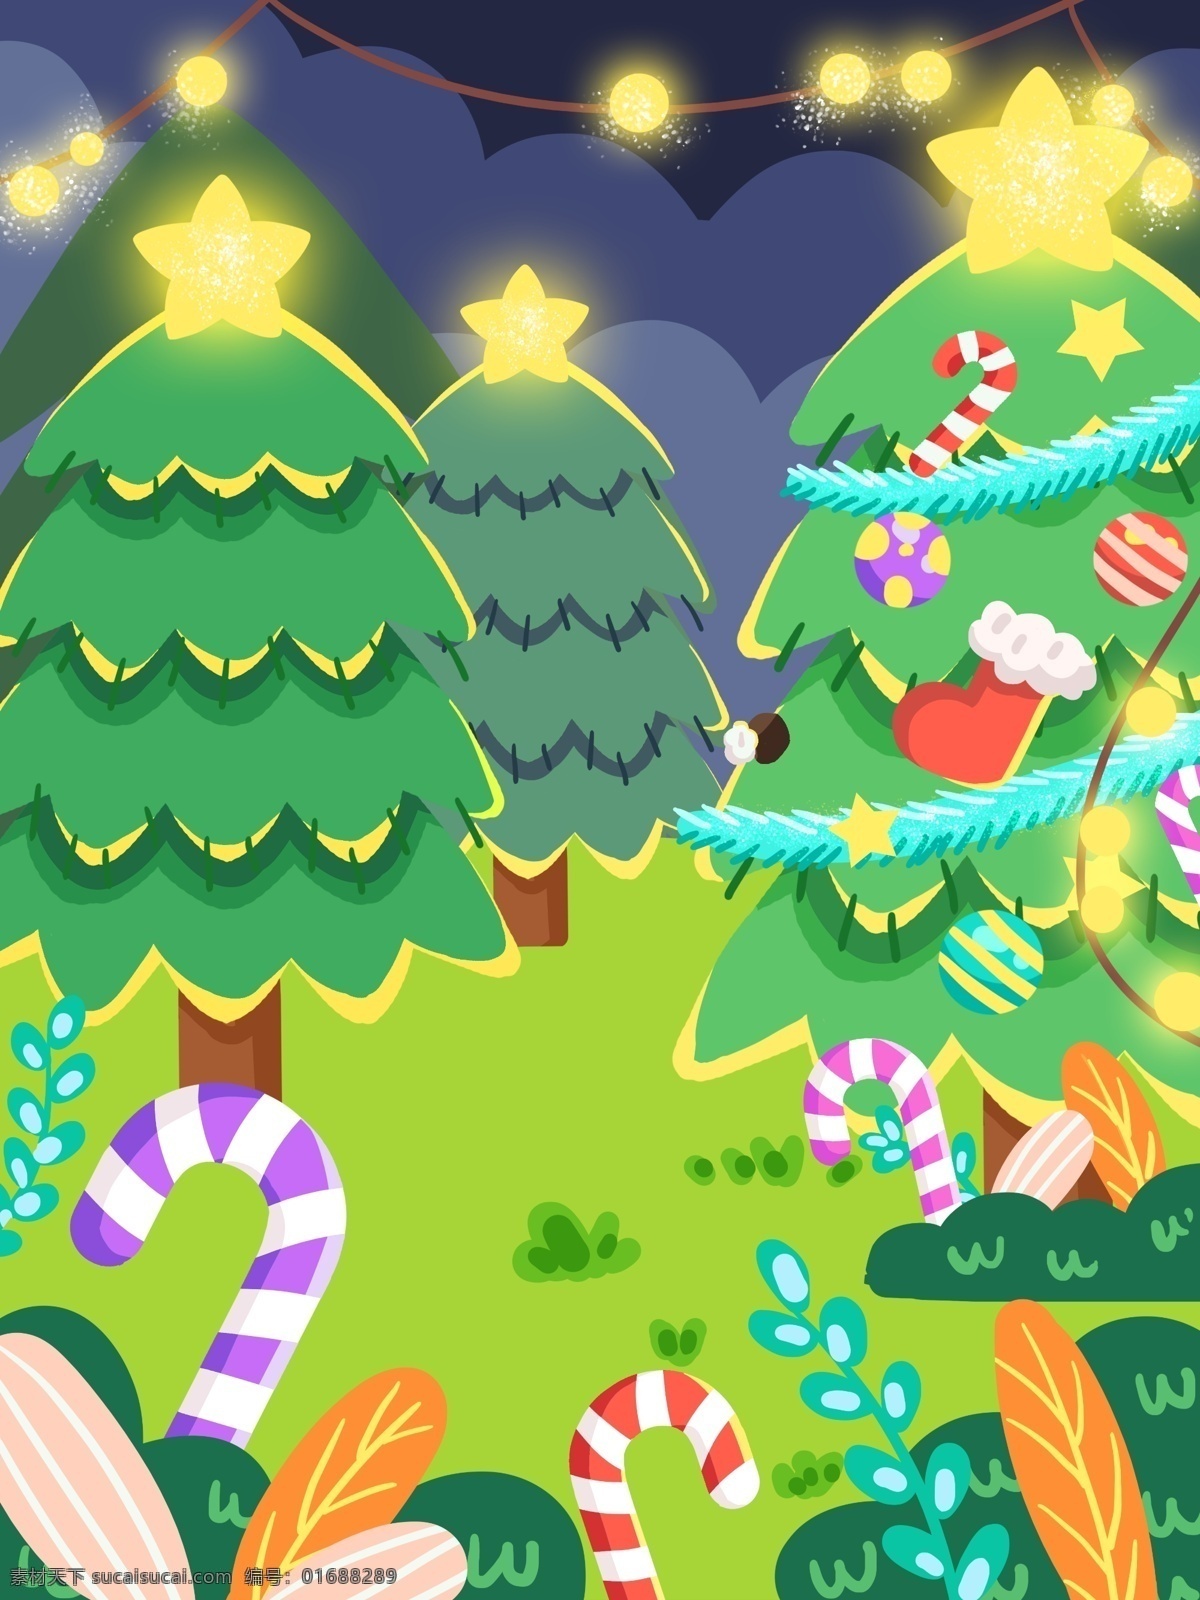 绿色 圣诞树 节日 背景 圣诞节 星星 拐杖 发光圣诞树 广告背景 彩绘背景 手绘背景 通用背景 促销背景 背景展板图 背景图 创意